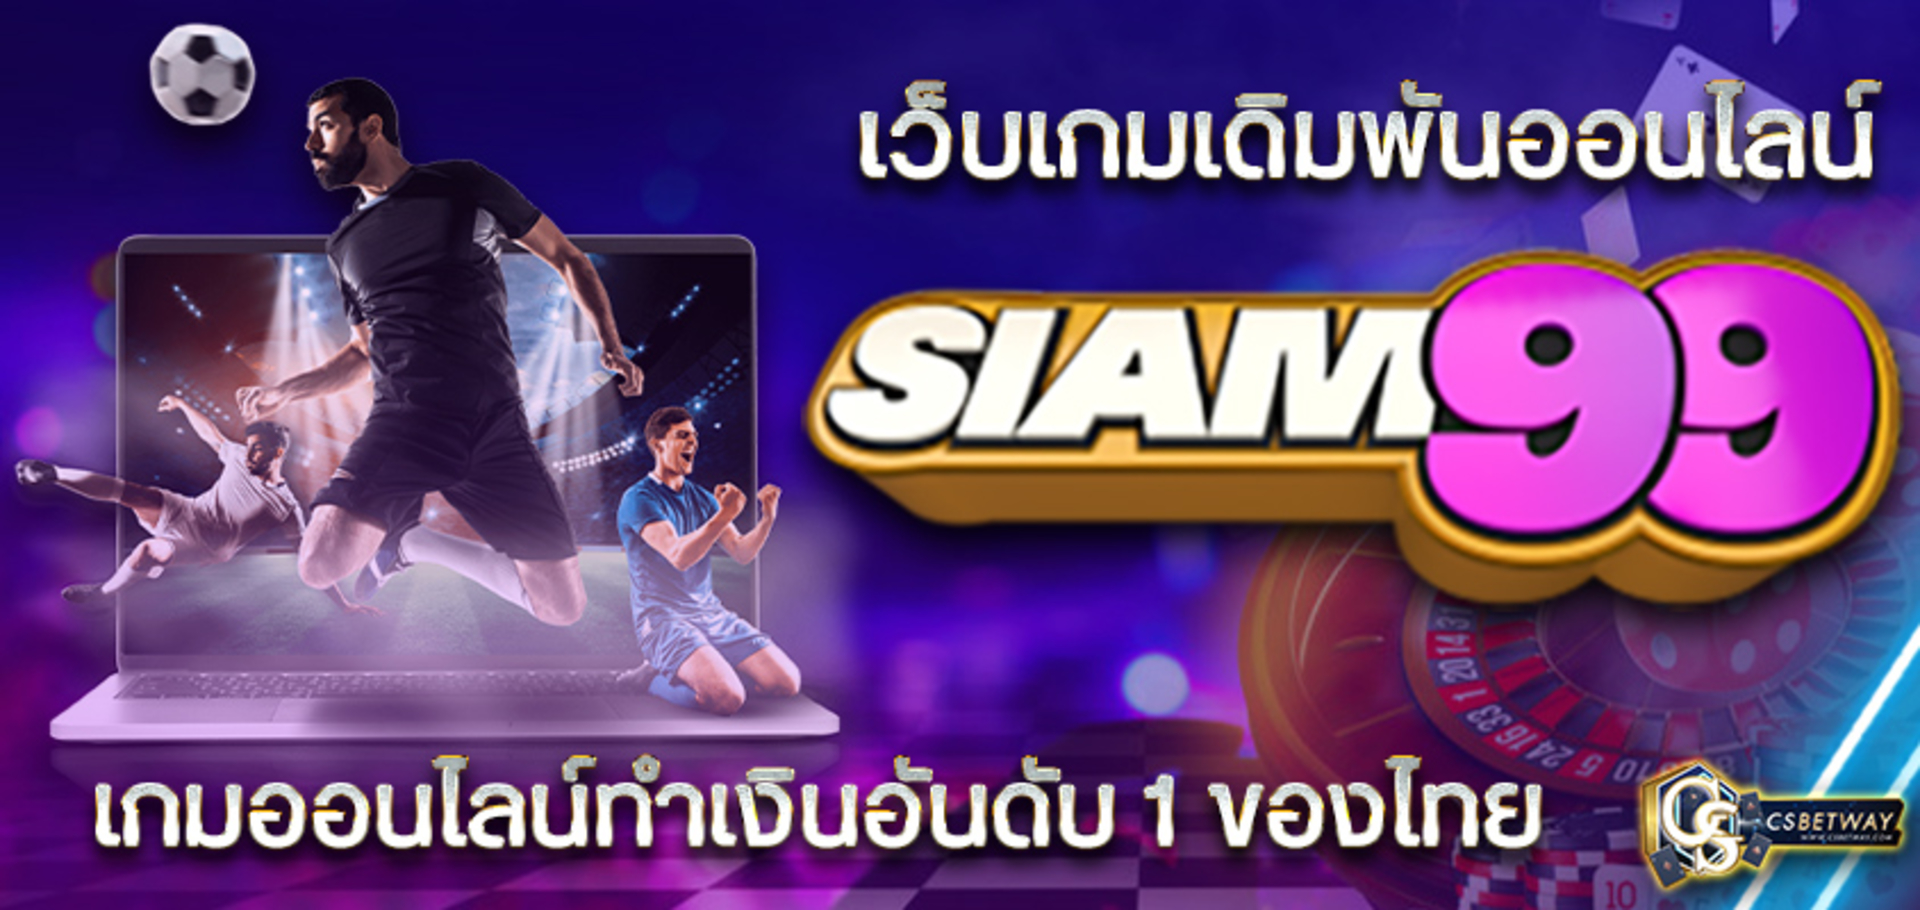 Siam99 เว็บเกมเดิมพันออนไลน์ สยาม99 บาคาร่า สล็อต เกมออนไลน์ทำเงินอันดับ 1 ของไทย